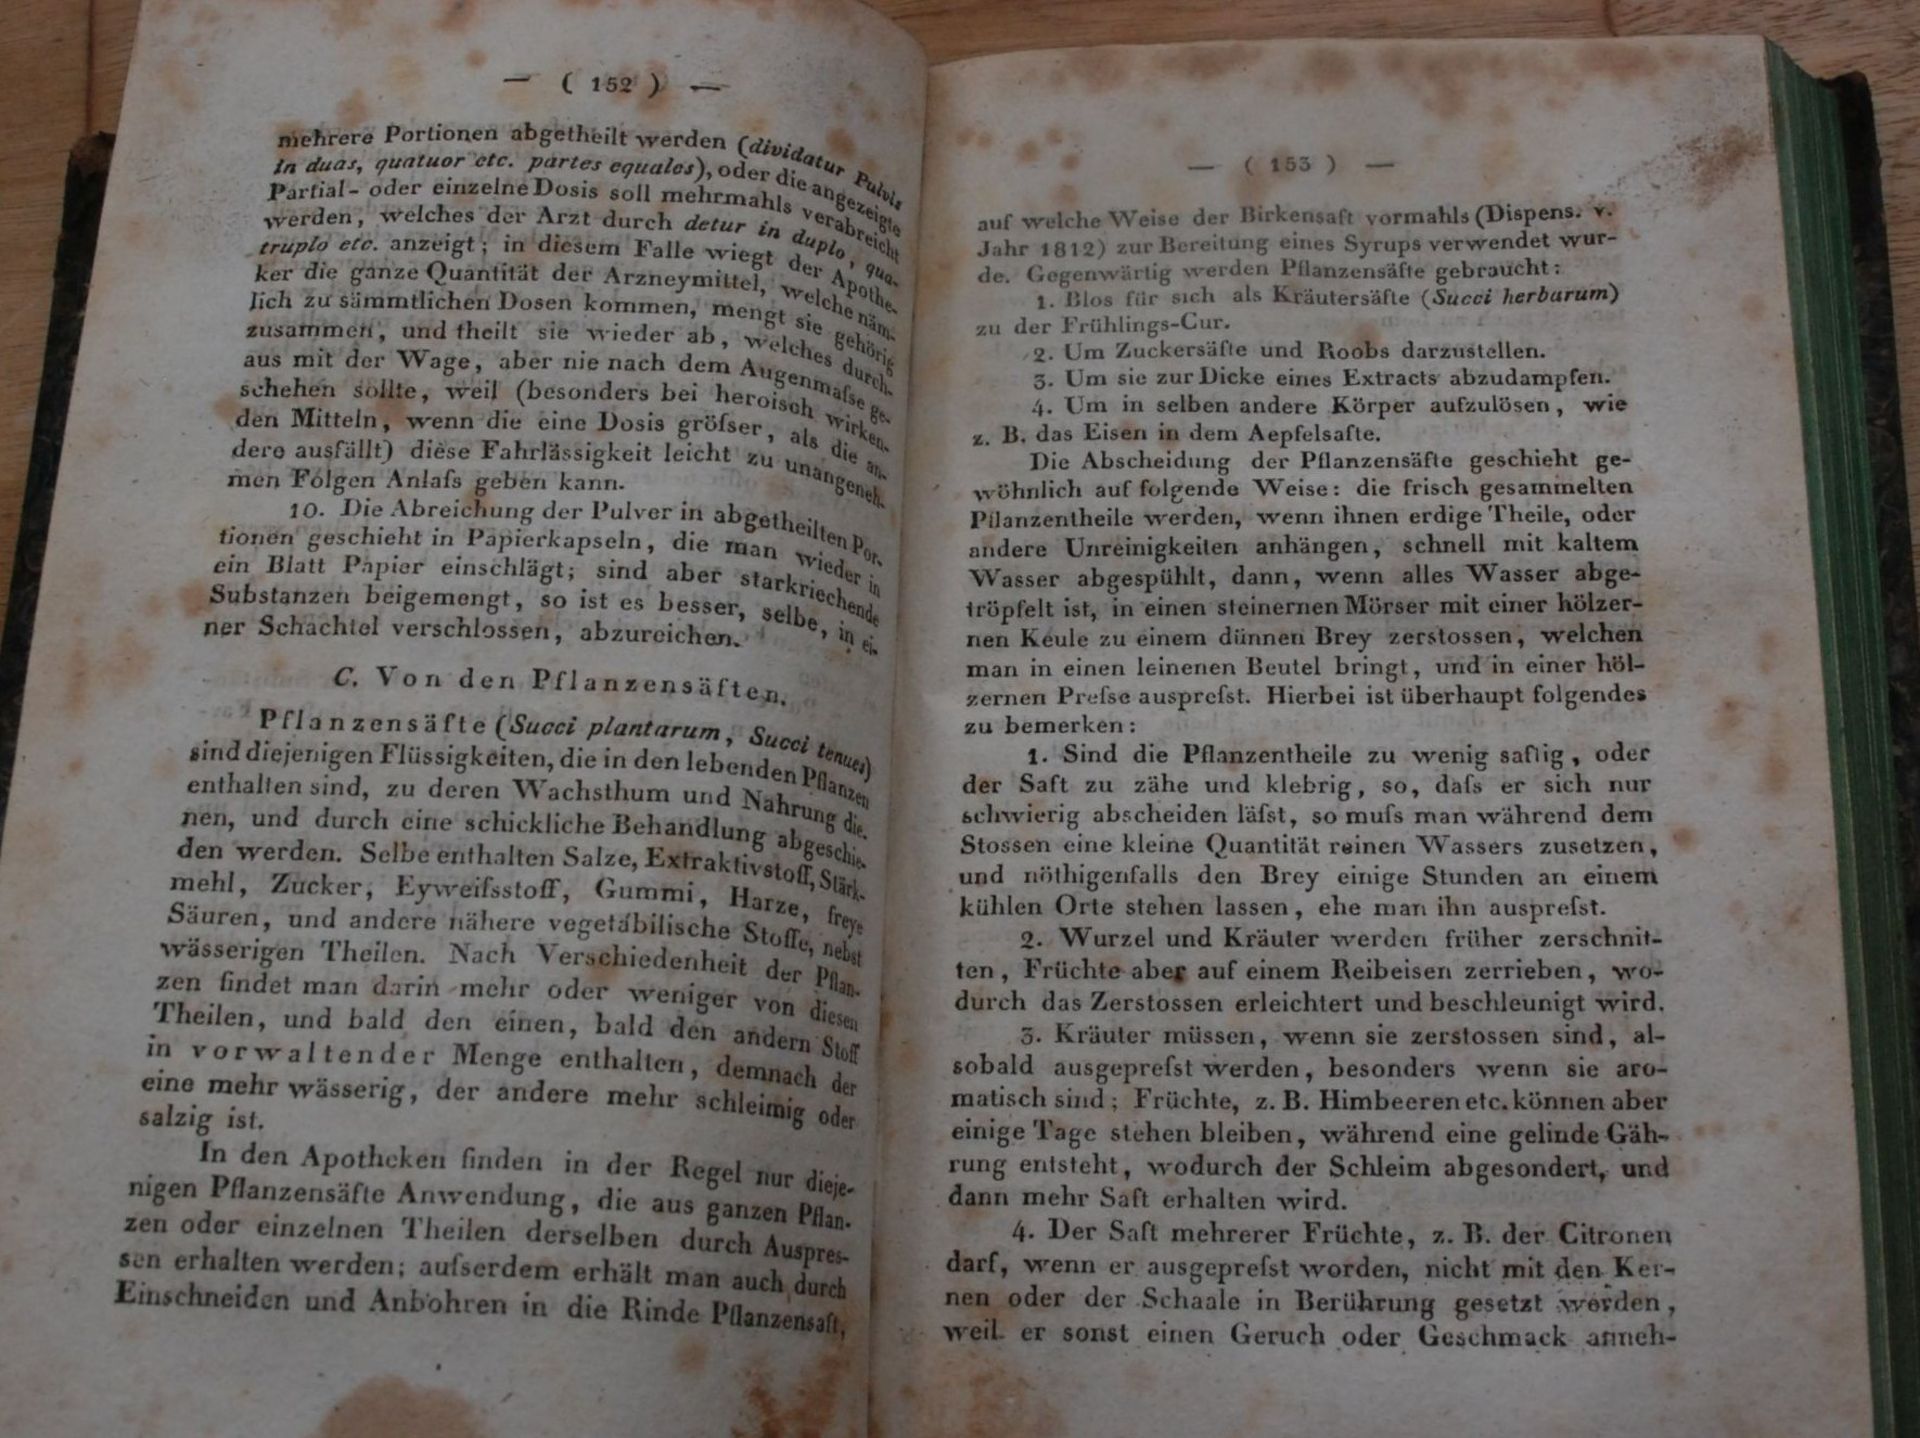 M. Ehrmann "Handbuch der Pharmacie" Wien 1828, im Selbstverlag, 3.Band, stockfleckig, ansonsten gu - Bild 4 aus 4